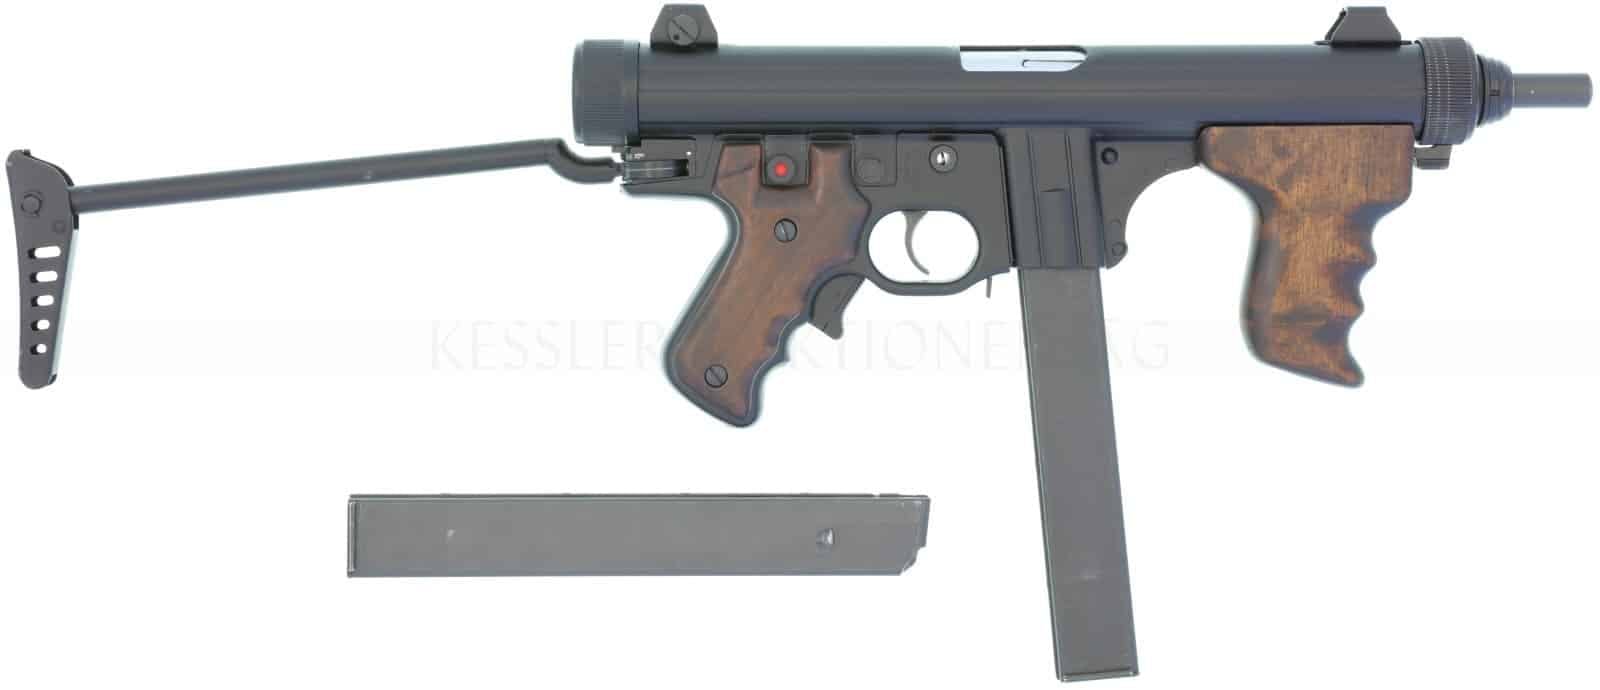 <strong>Seriefeuerwaffen</strong>
Italienische Beretta Modell 12, Maschinenpistole im Kaliber 9mm Para.